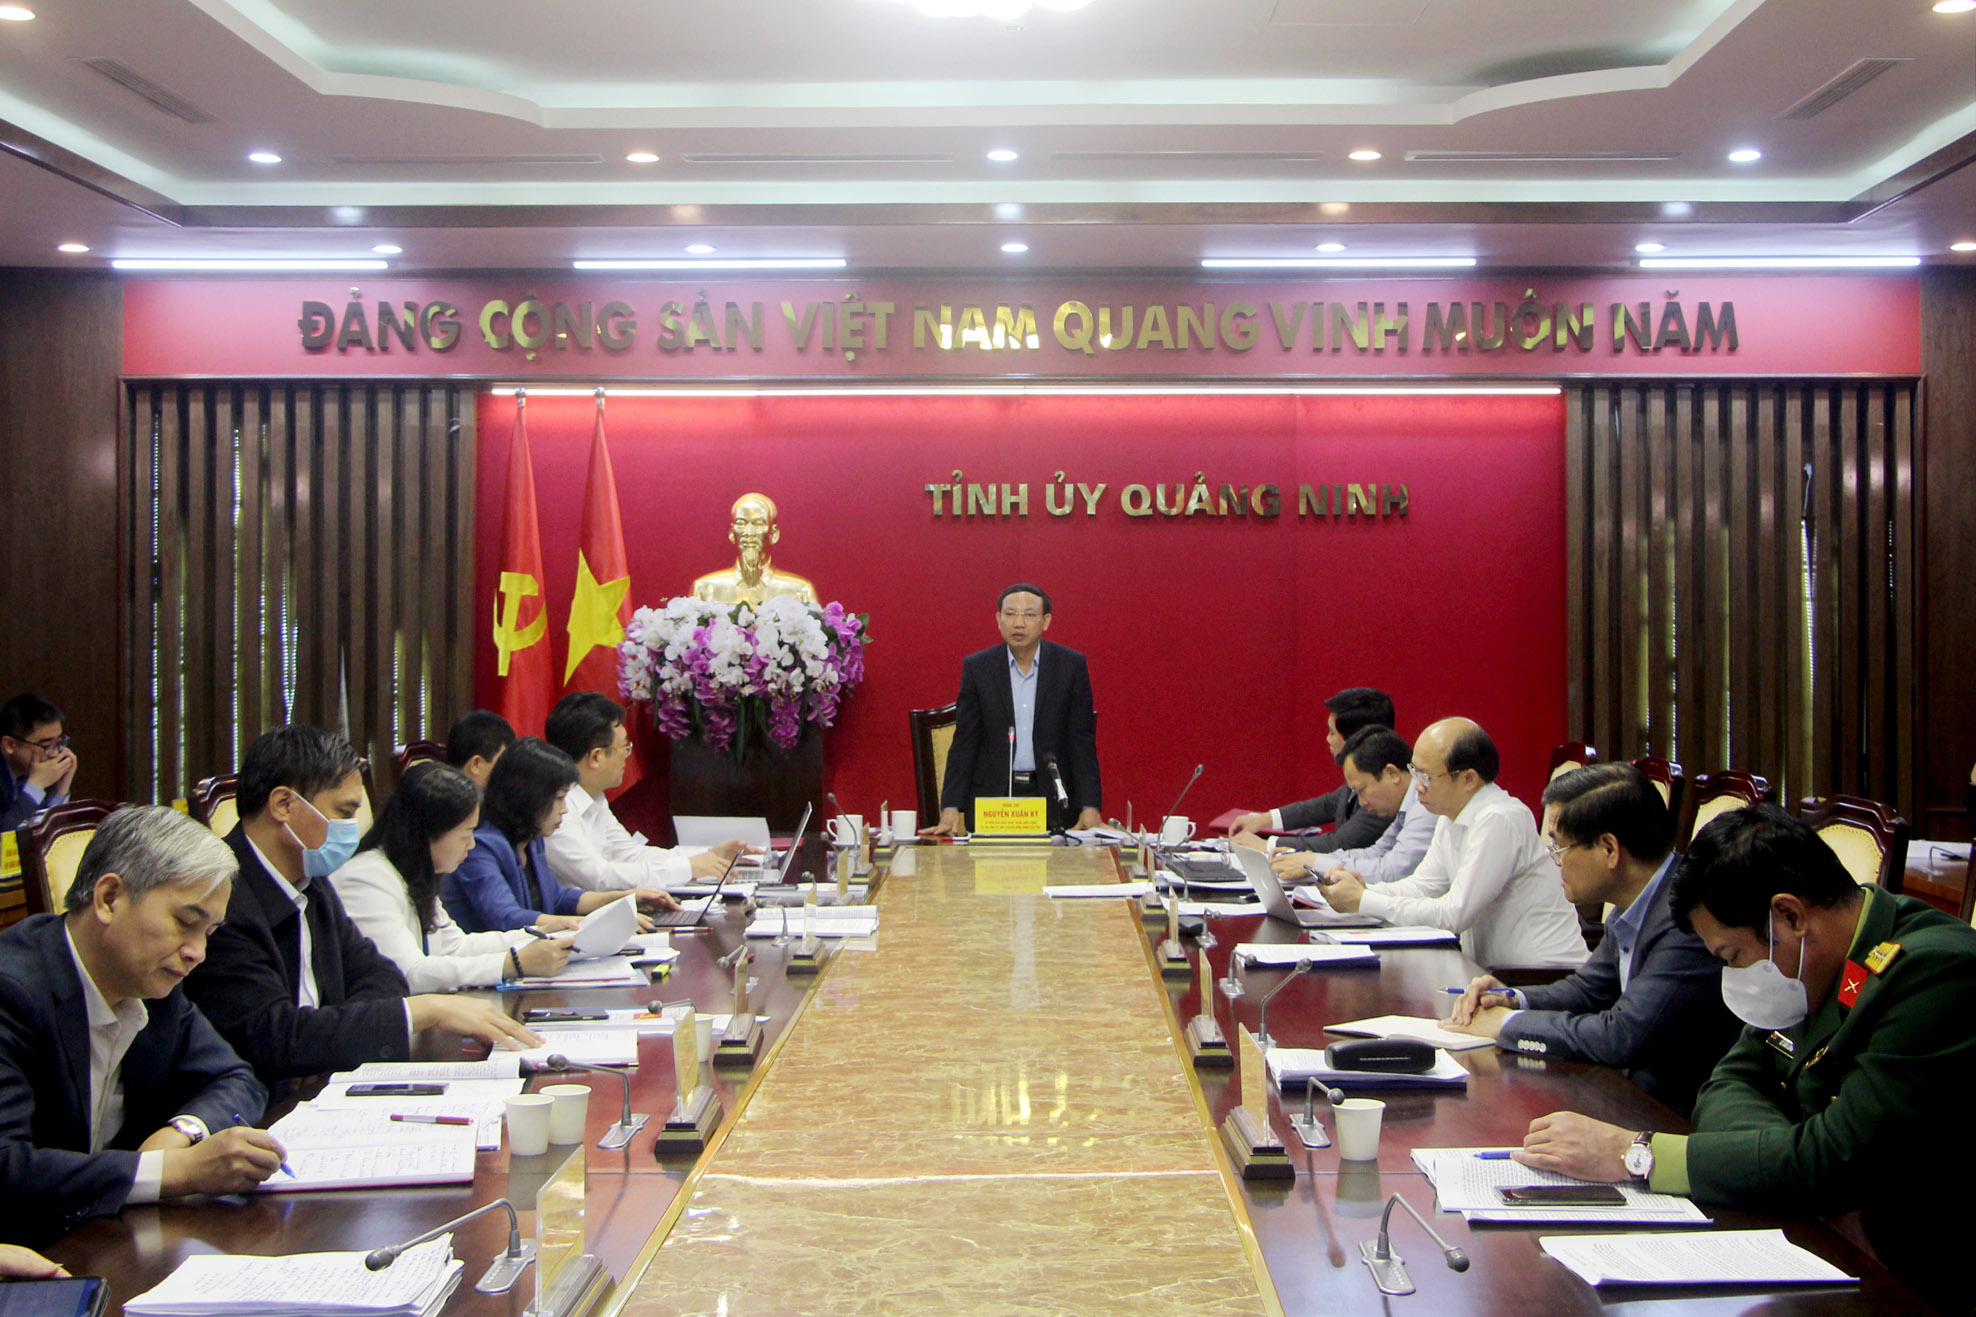 Đồng chí Nguyễn Xuân Ký, Ủy viên BCH Trung ương Đảng, Bí thư Tỉnh ủy, Chủ tịch HĐND tỉnh, kết luận buổi làm việc.